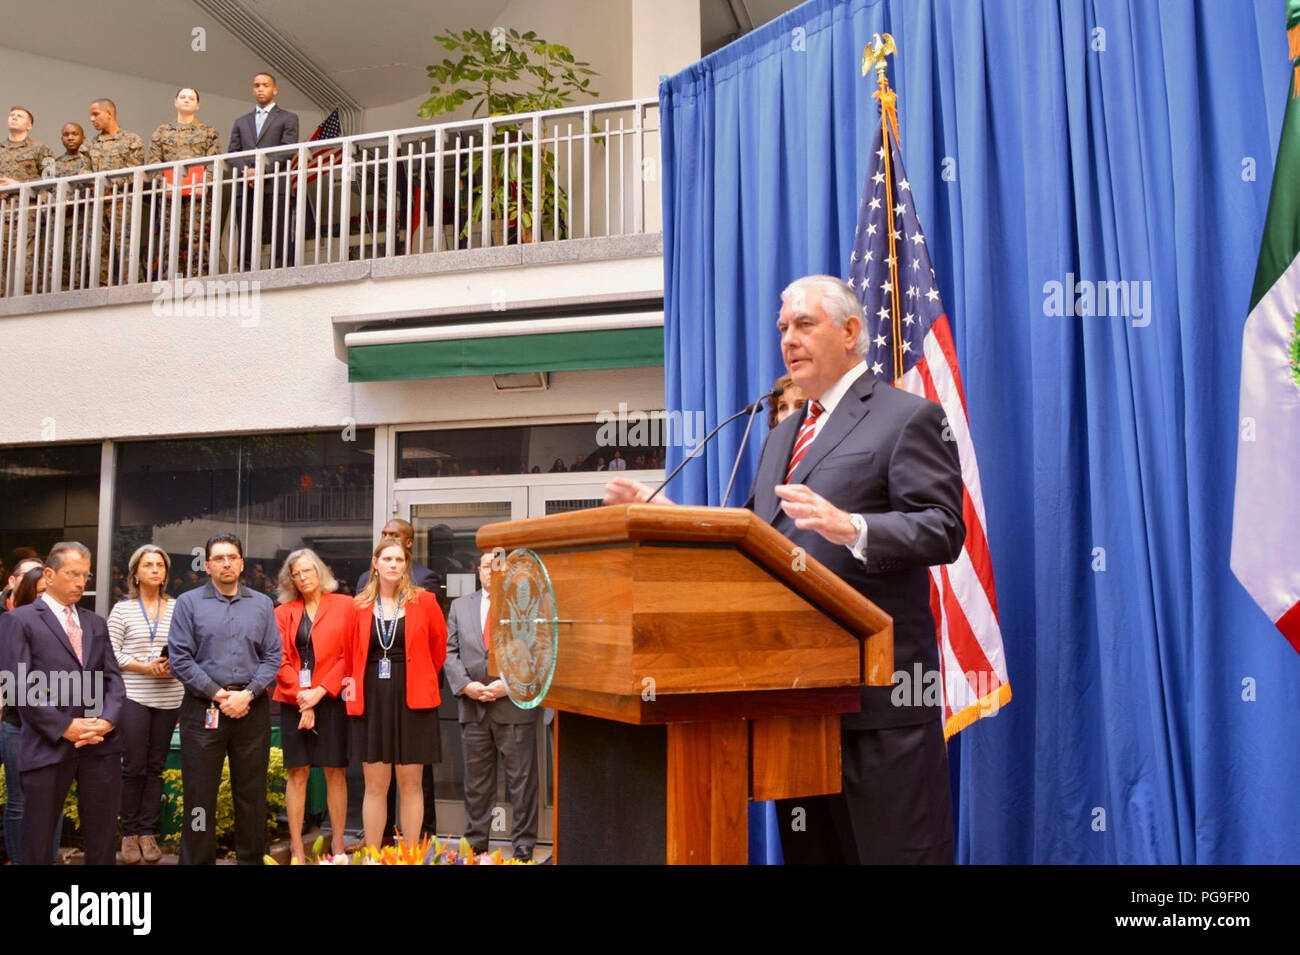 La secrétaire d'État des États-Unis, Rex Tillerson traite de l'ambassade des États-Unis et du personnel Le personnel de la ville de Mexico, Mexique, le 2 février 2018. Banque D'Images